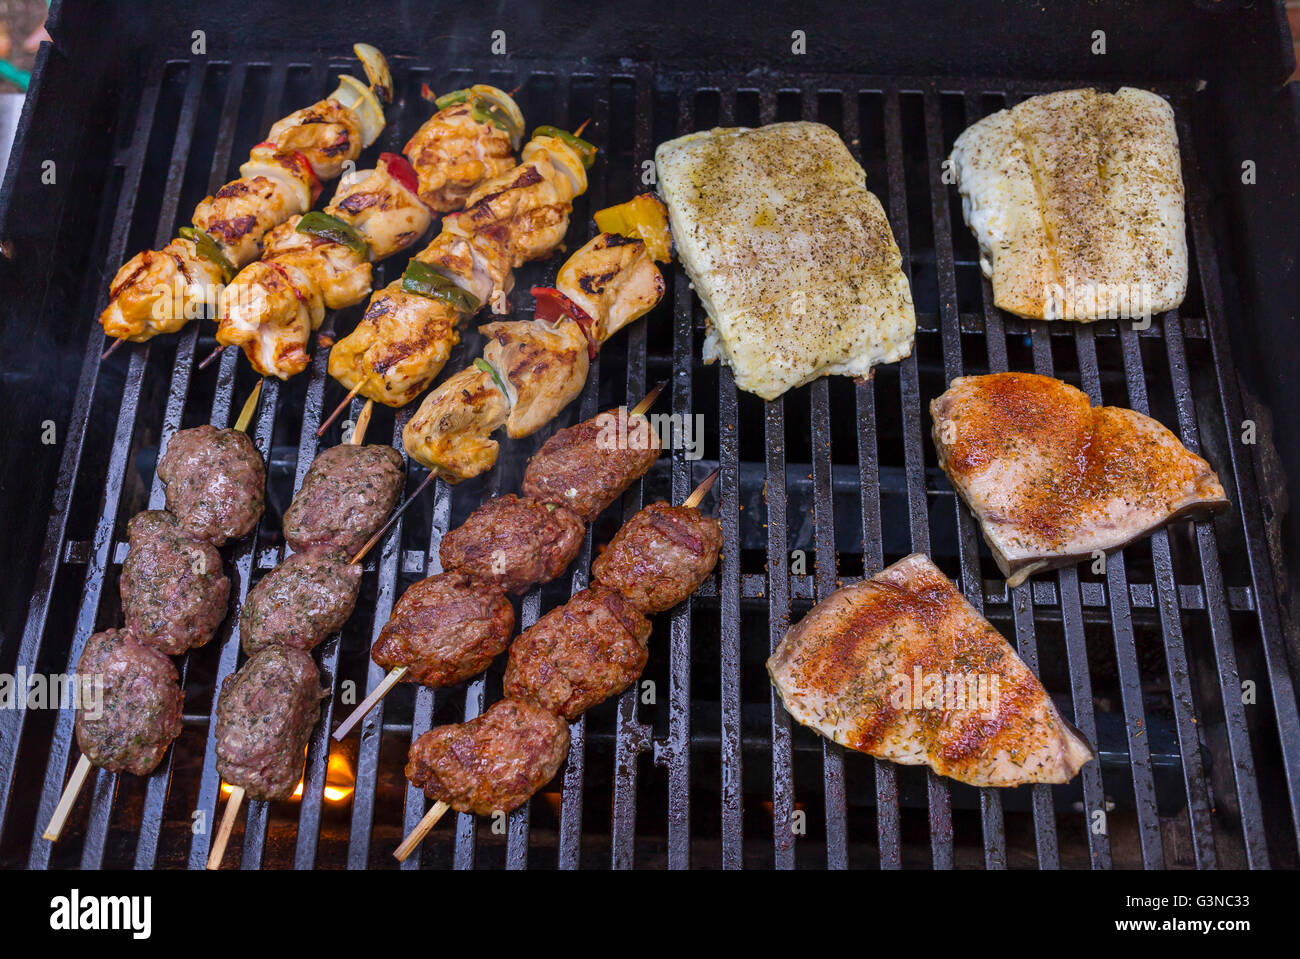 Virginie, USA - brochettes de poulet, agneau kofta, brochettes et poissons grillées sur barbecue. Banque D'Images